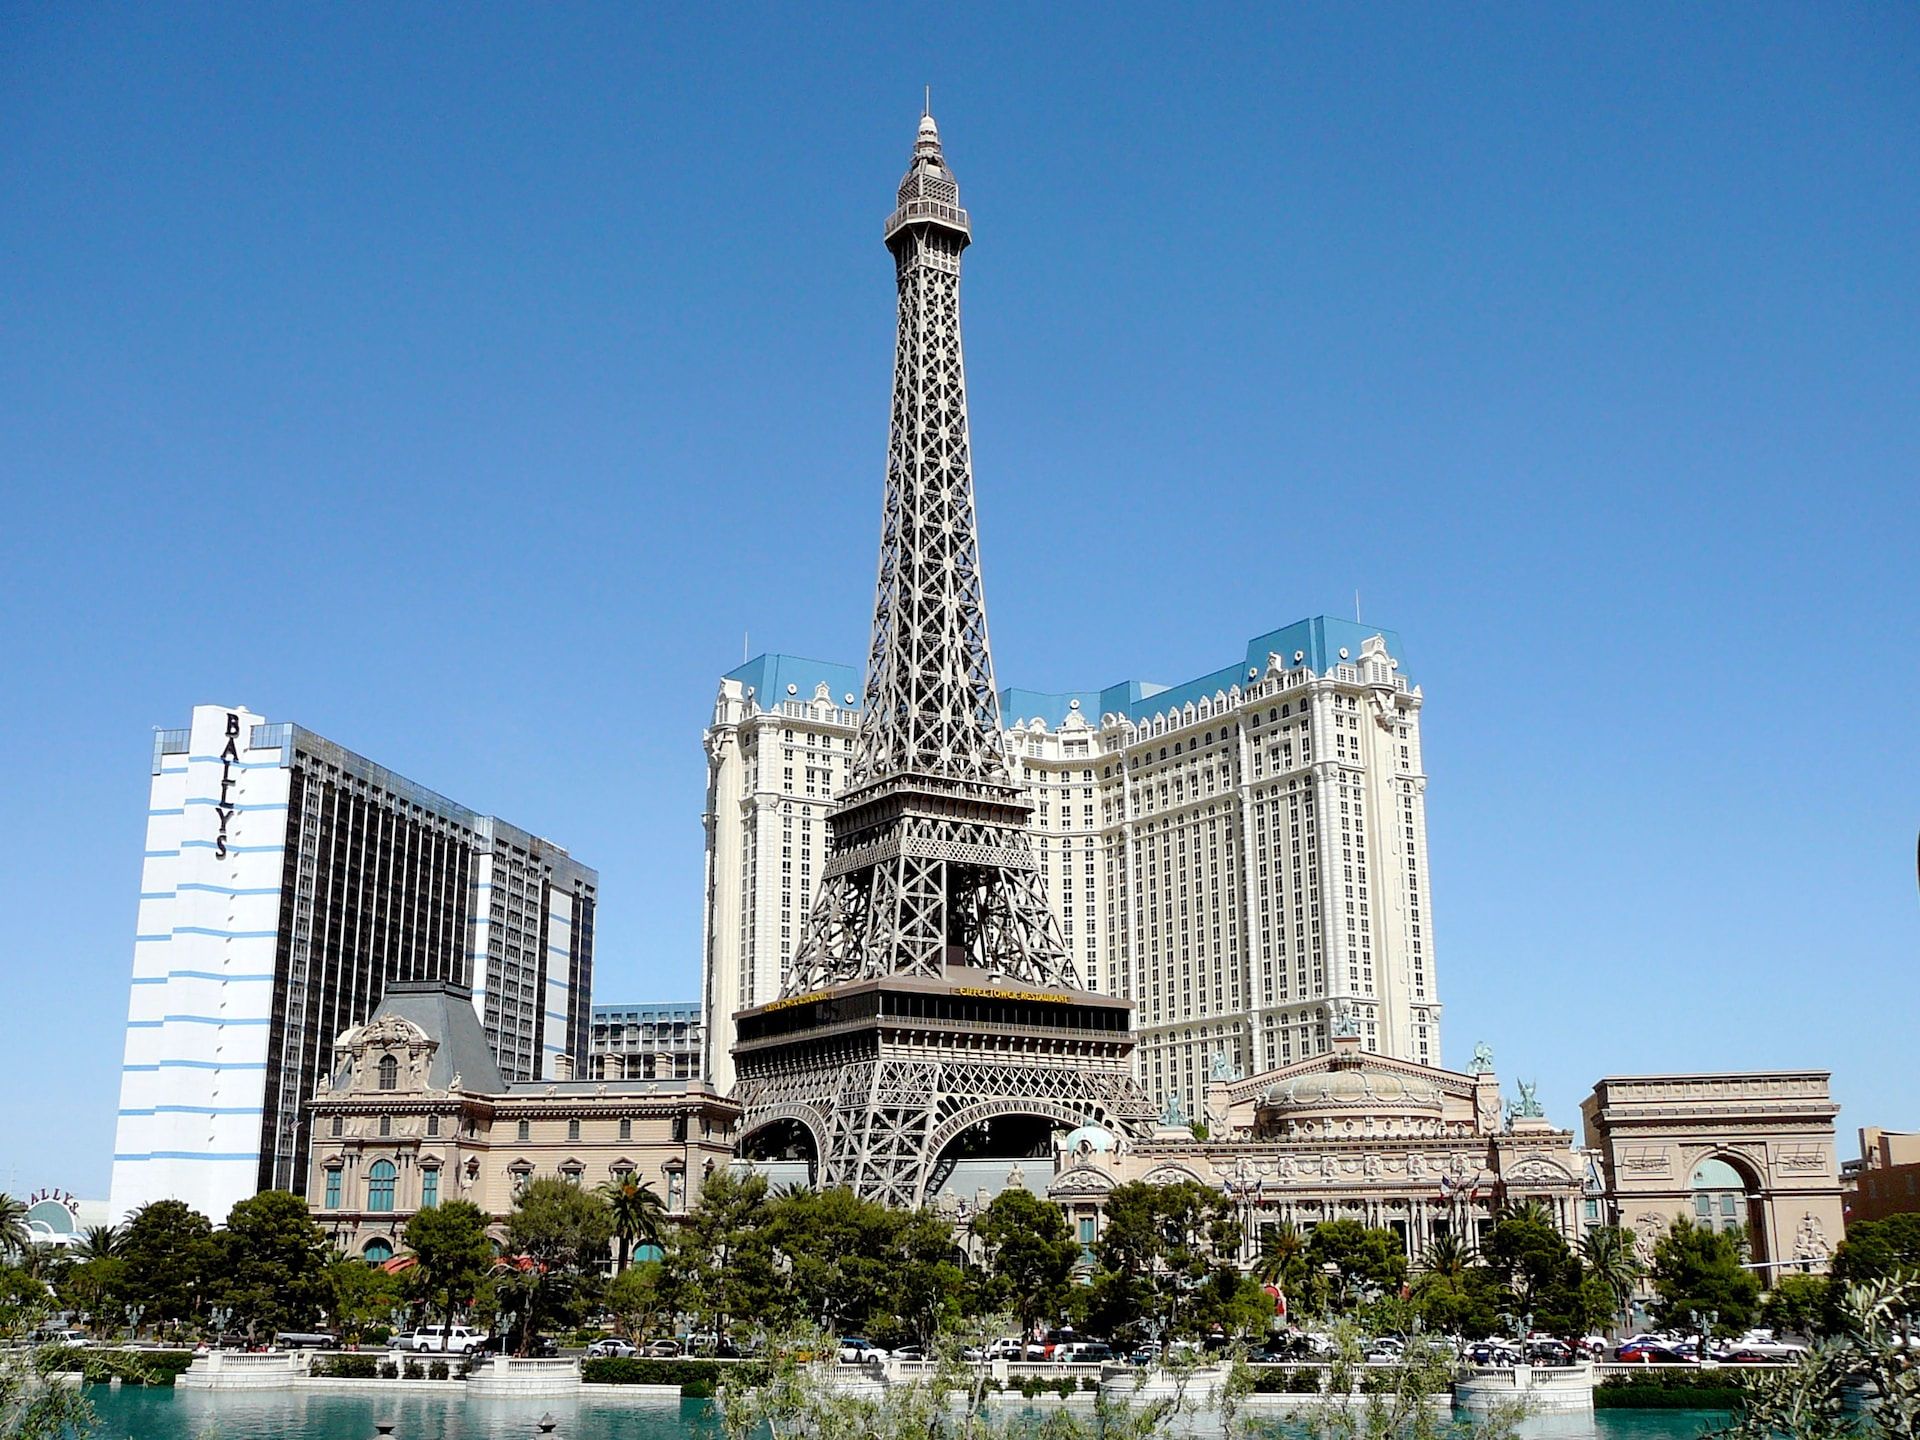 Eiffel Tower at Paris Las Vegas, a famous attraction in Las Vegas 